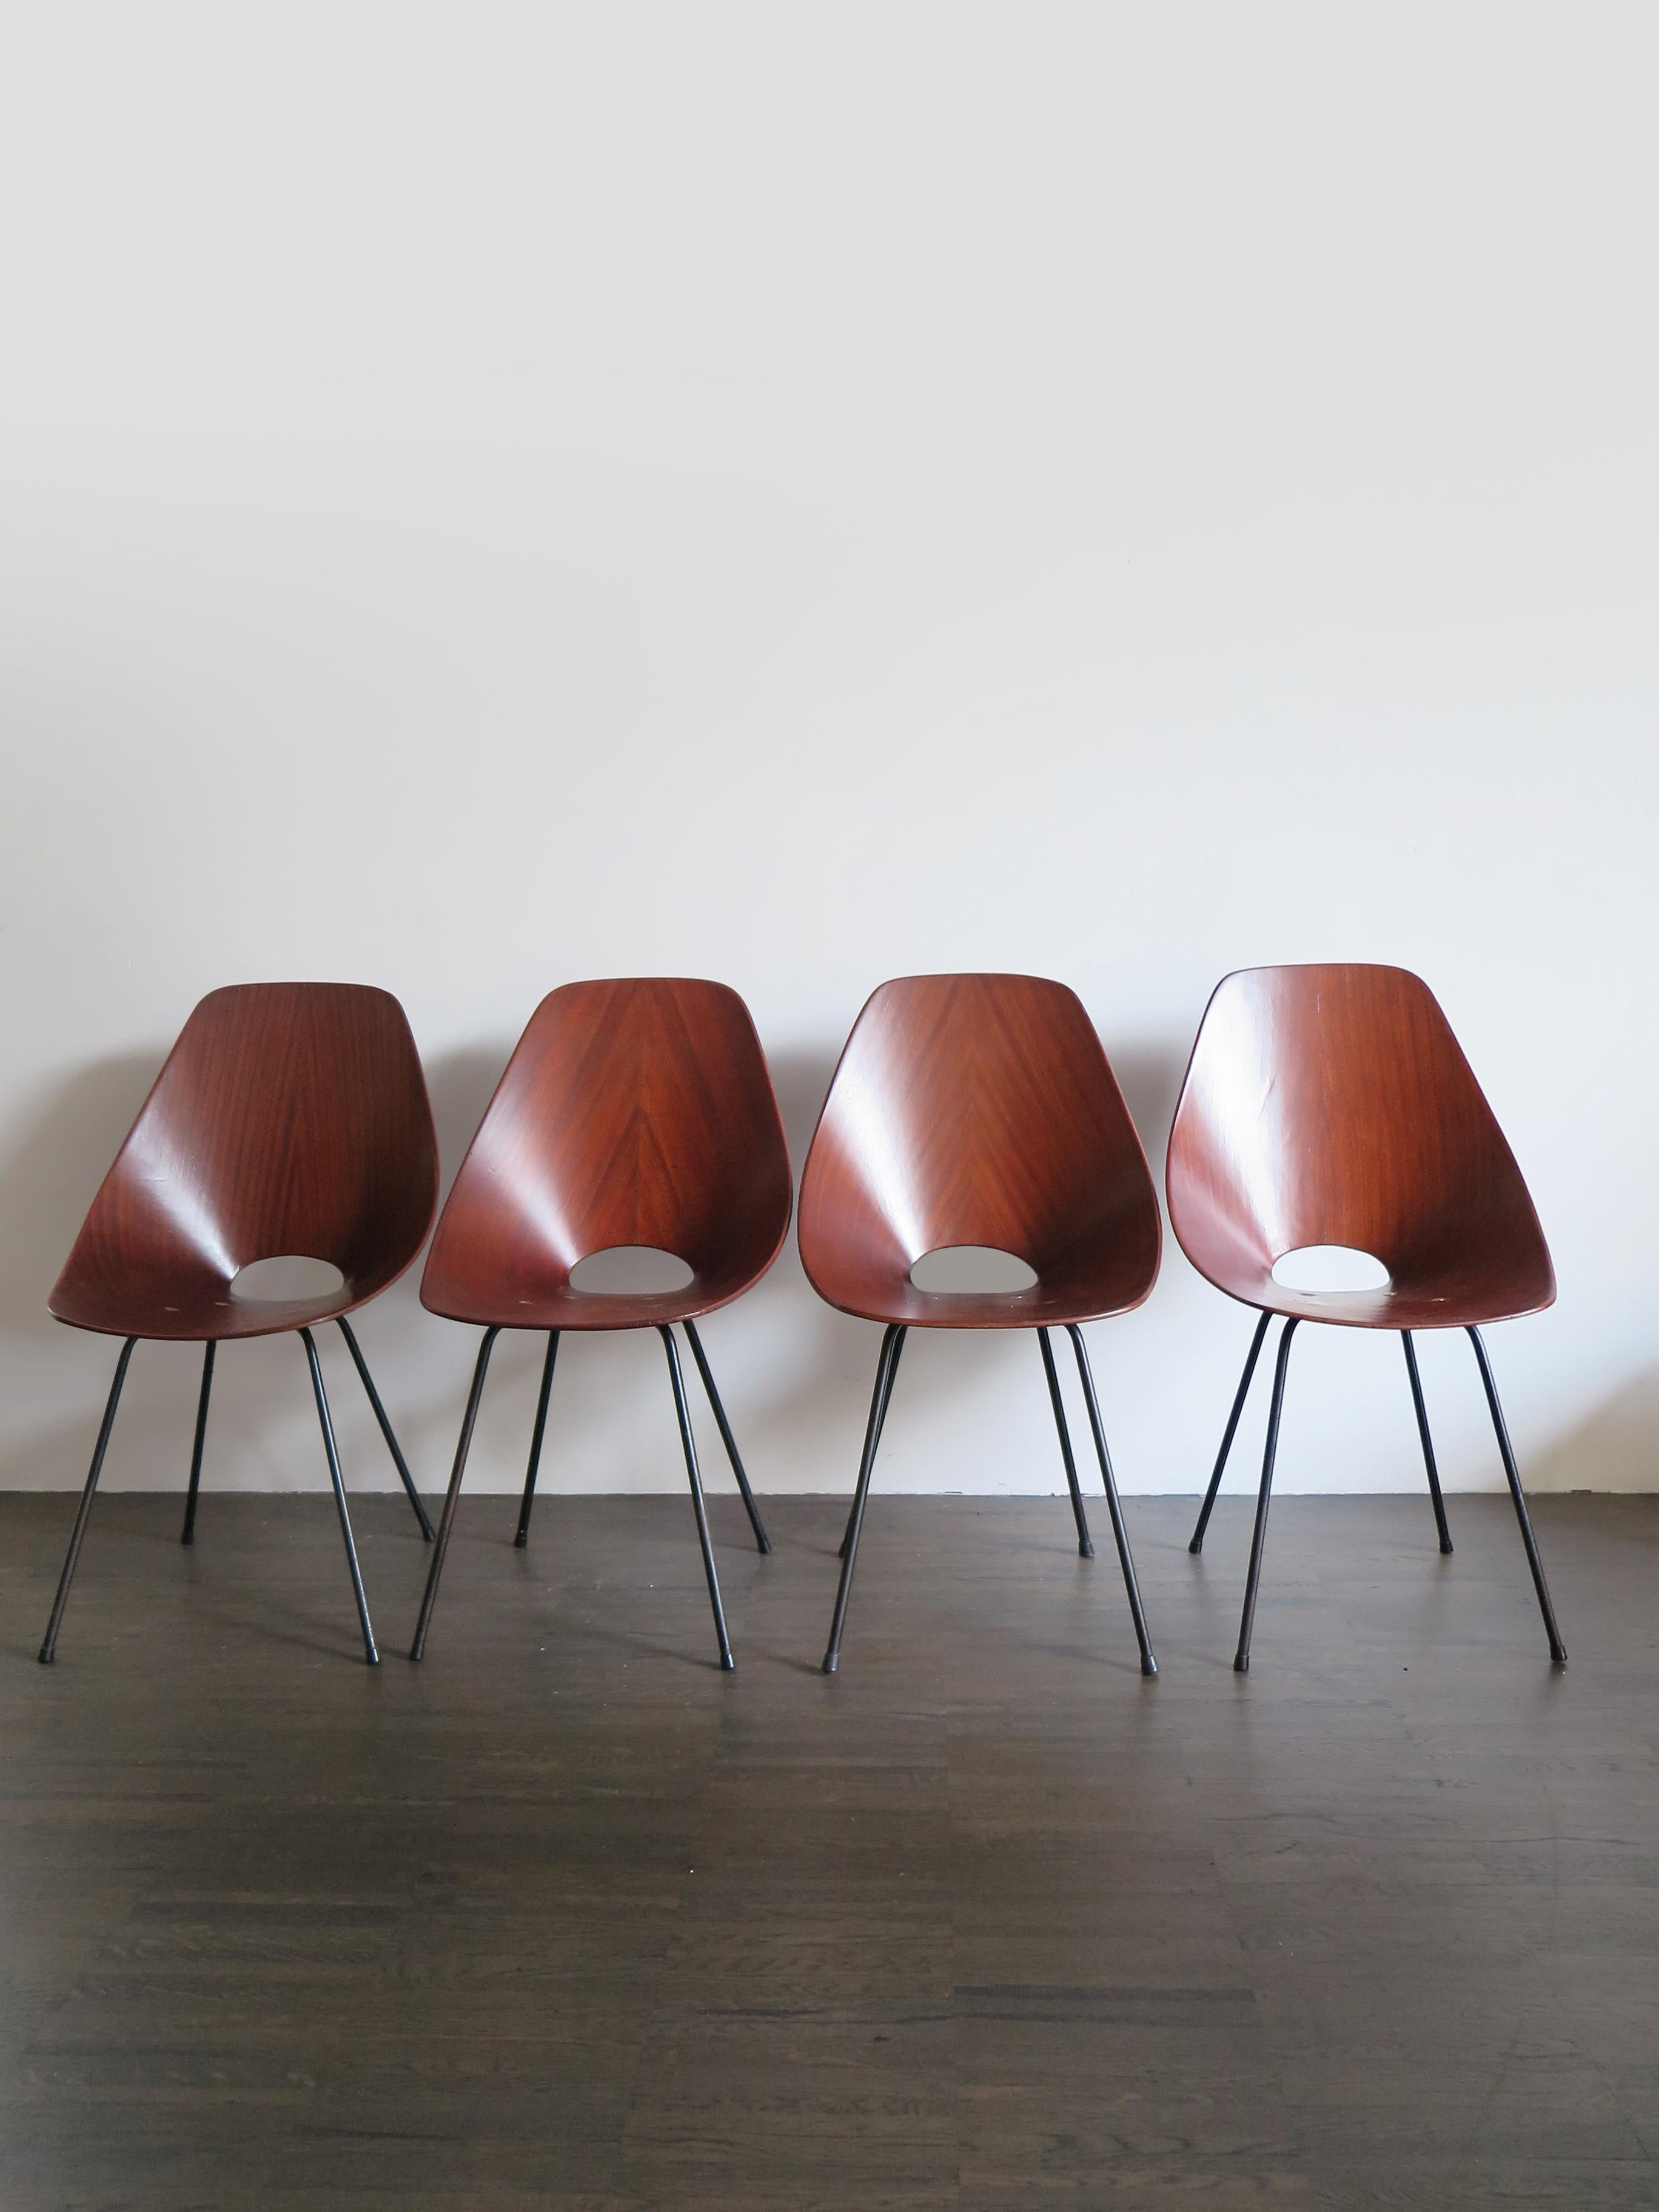 Ensemble de quatre chaises de salle à manger italien du milieu du siècle dernier, modèle Medea, conçu par Vittorio Nobili et produit par Fratelli Tagliabue,
Contreplaqué plaqué, métal laqué, cette chaise a remporté le prestigieux prix 